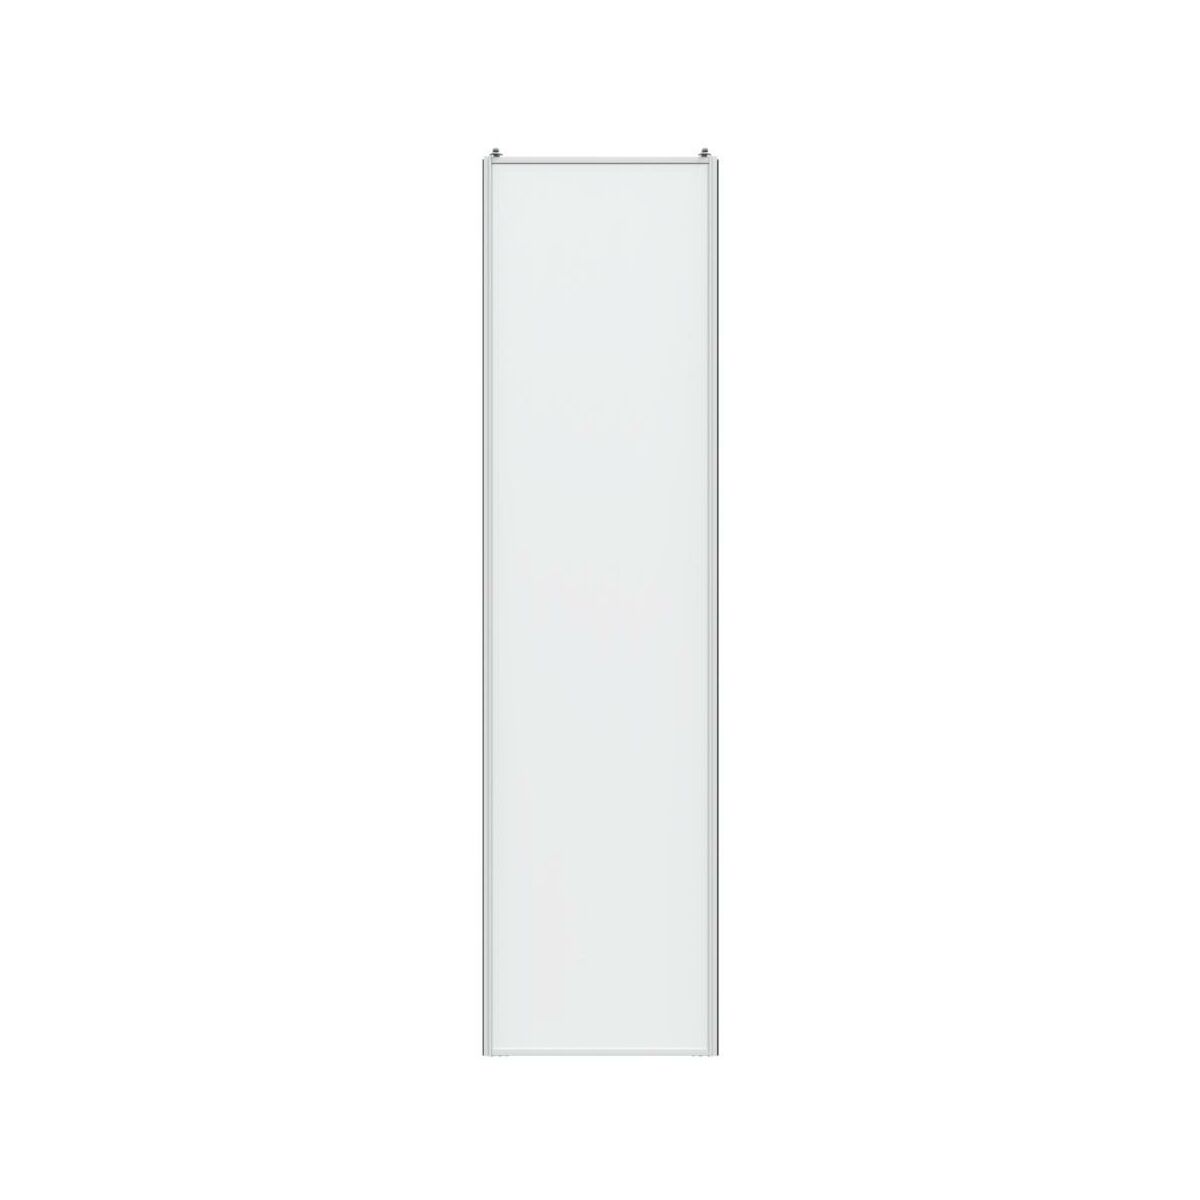 Drzwi przesuwne do szafy 66 cm białe rama biała Spaceo